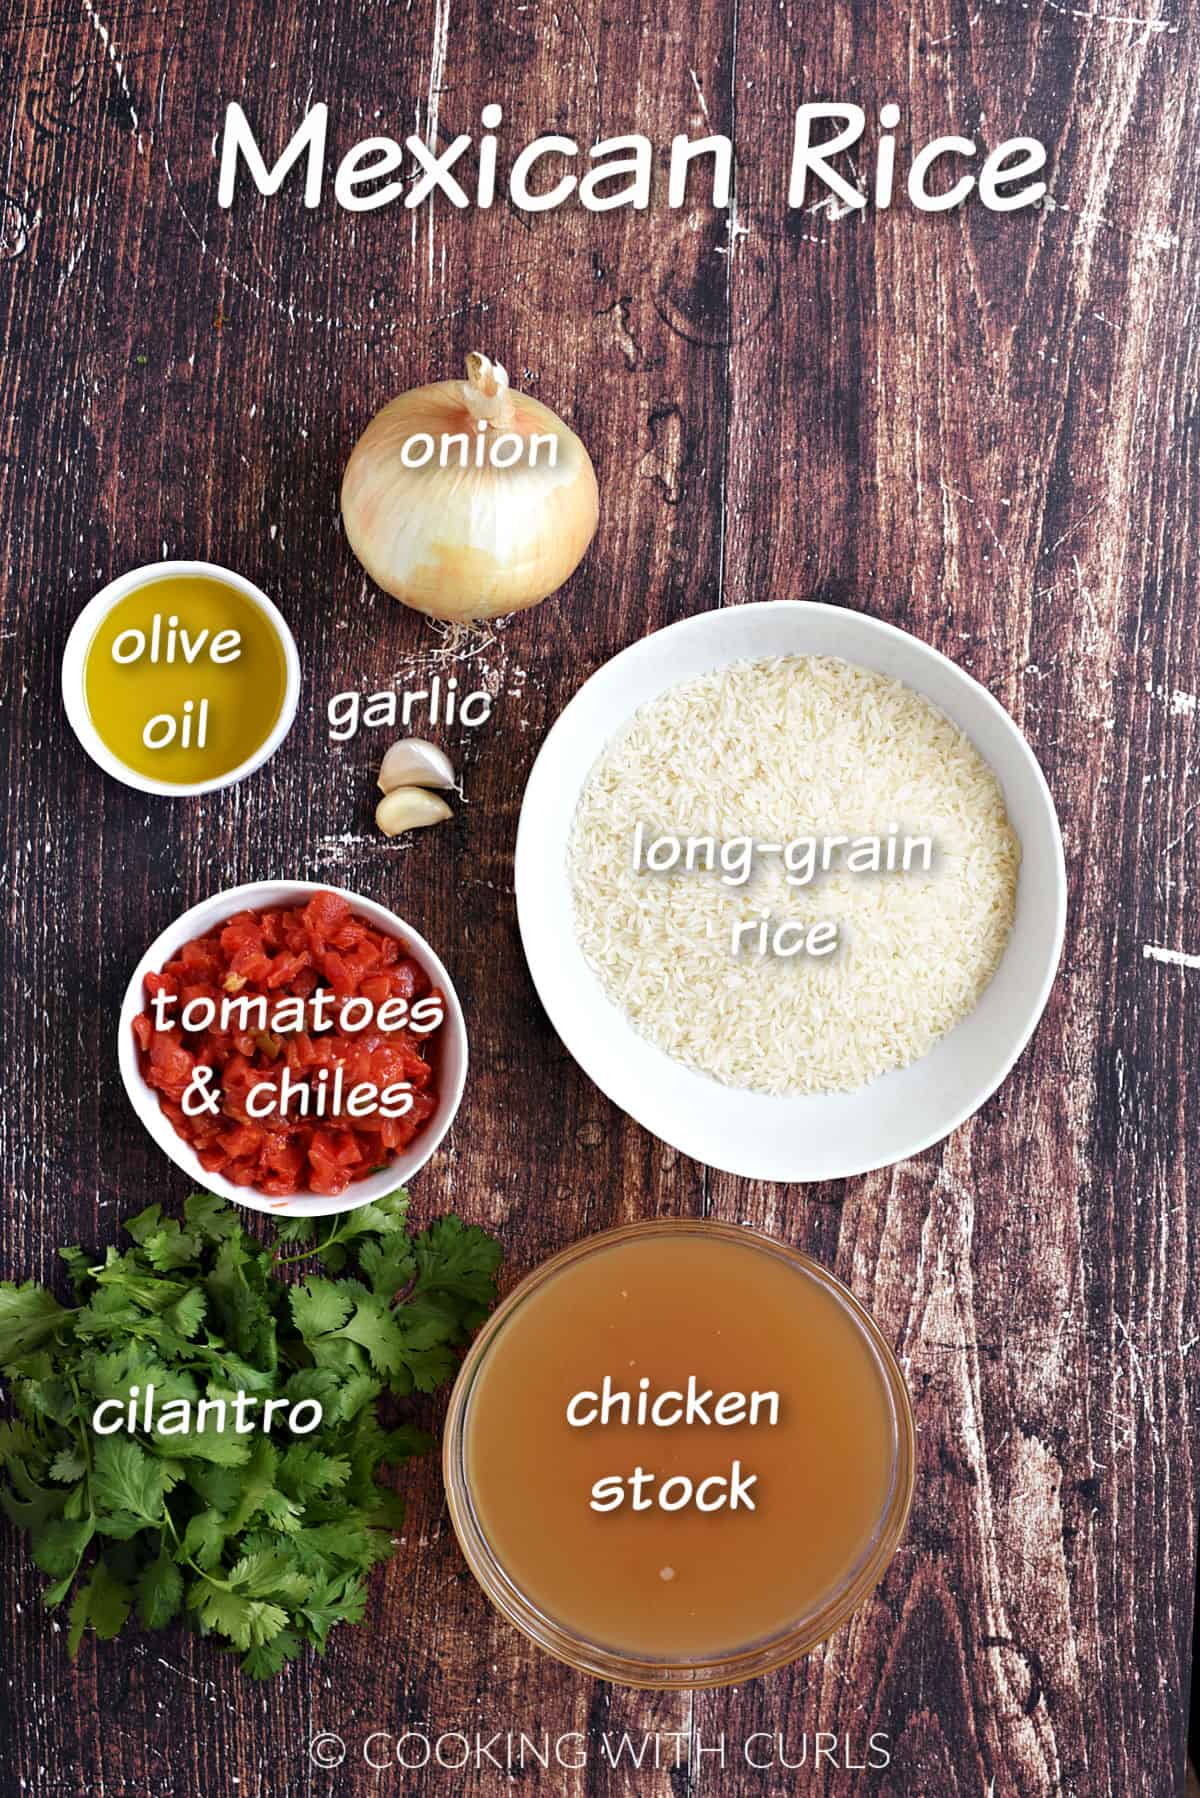 Rice, onion, garlic, oil, tomatoes, cilantro, and chicken stock. 